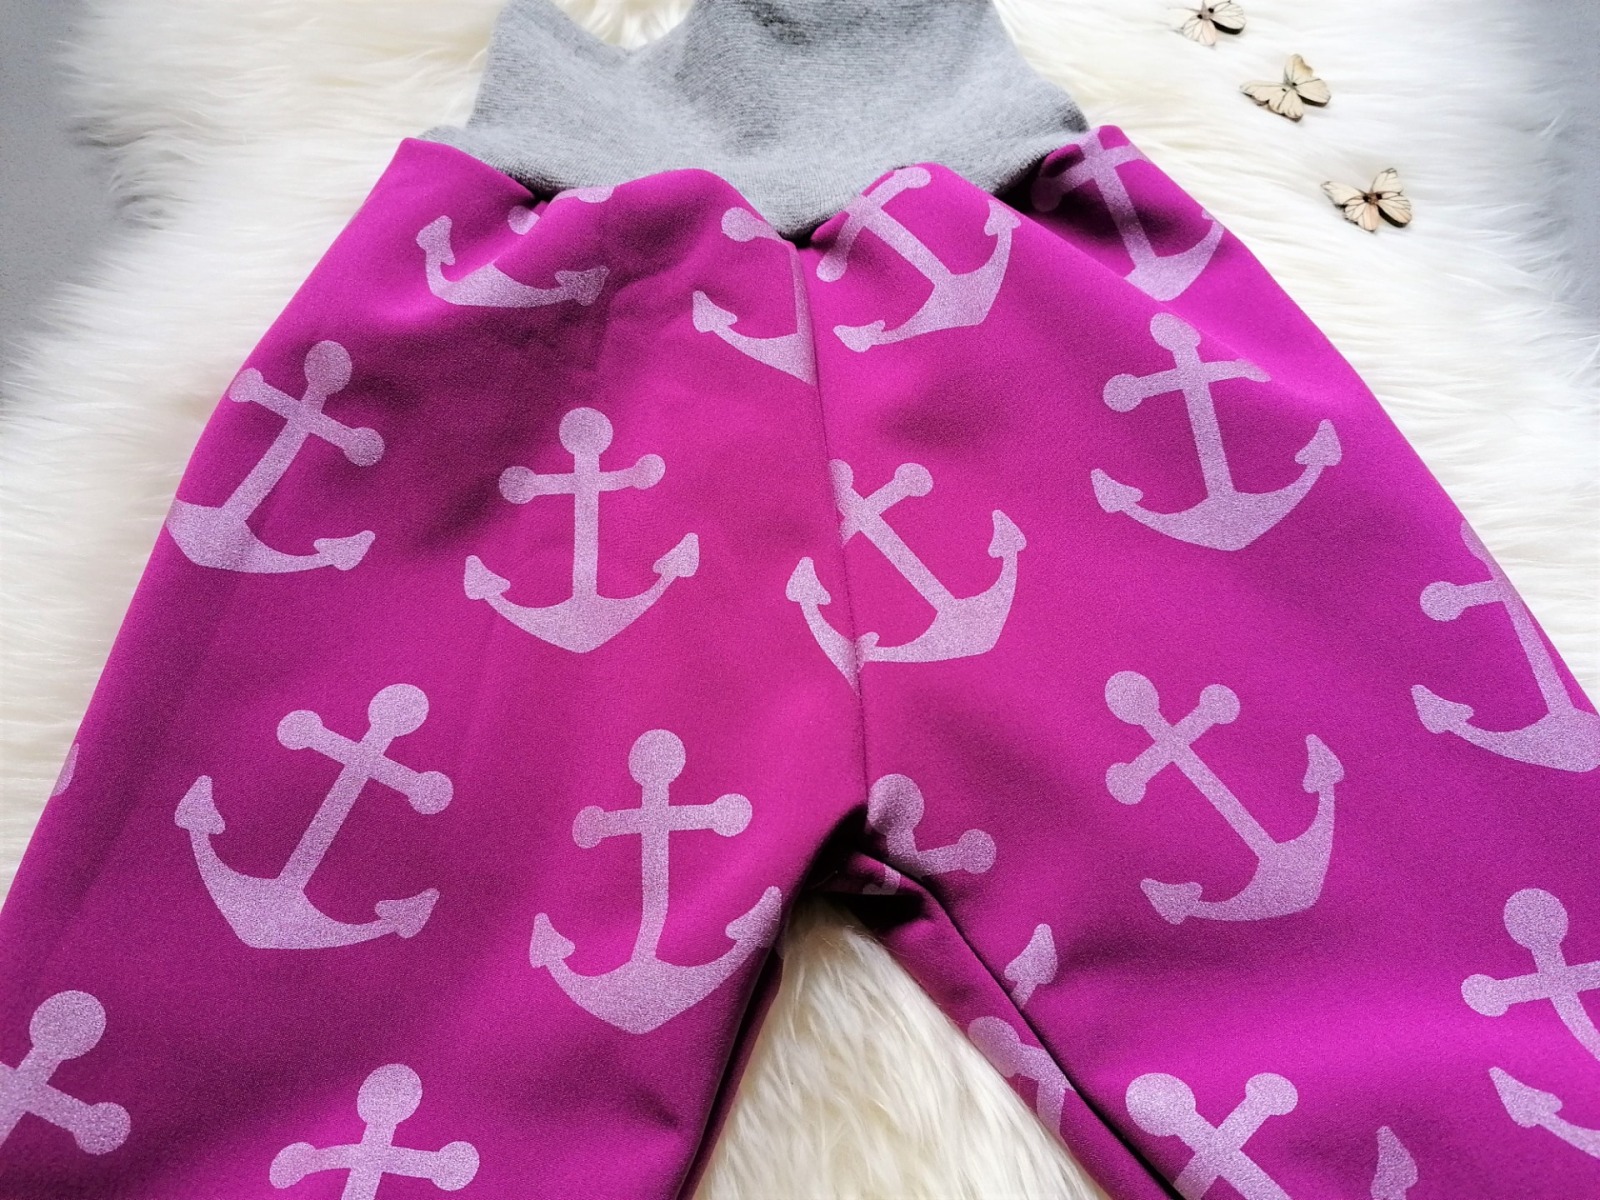 Kauf auf Bestellung Handmade Softshellhose Anker pink Gr 74-140 Nachtfalter-kreativ 2